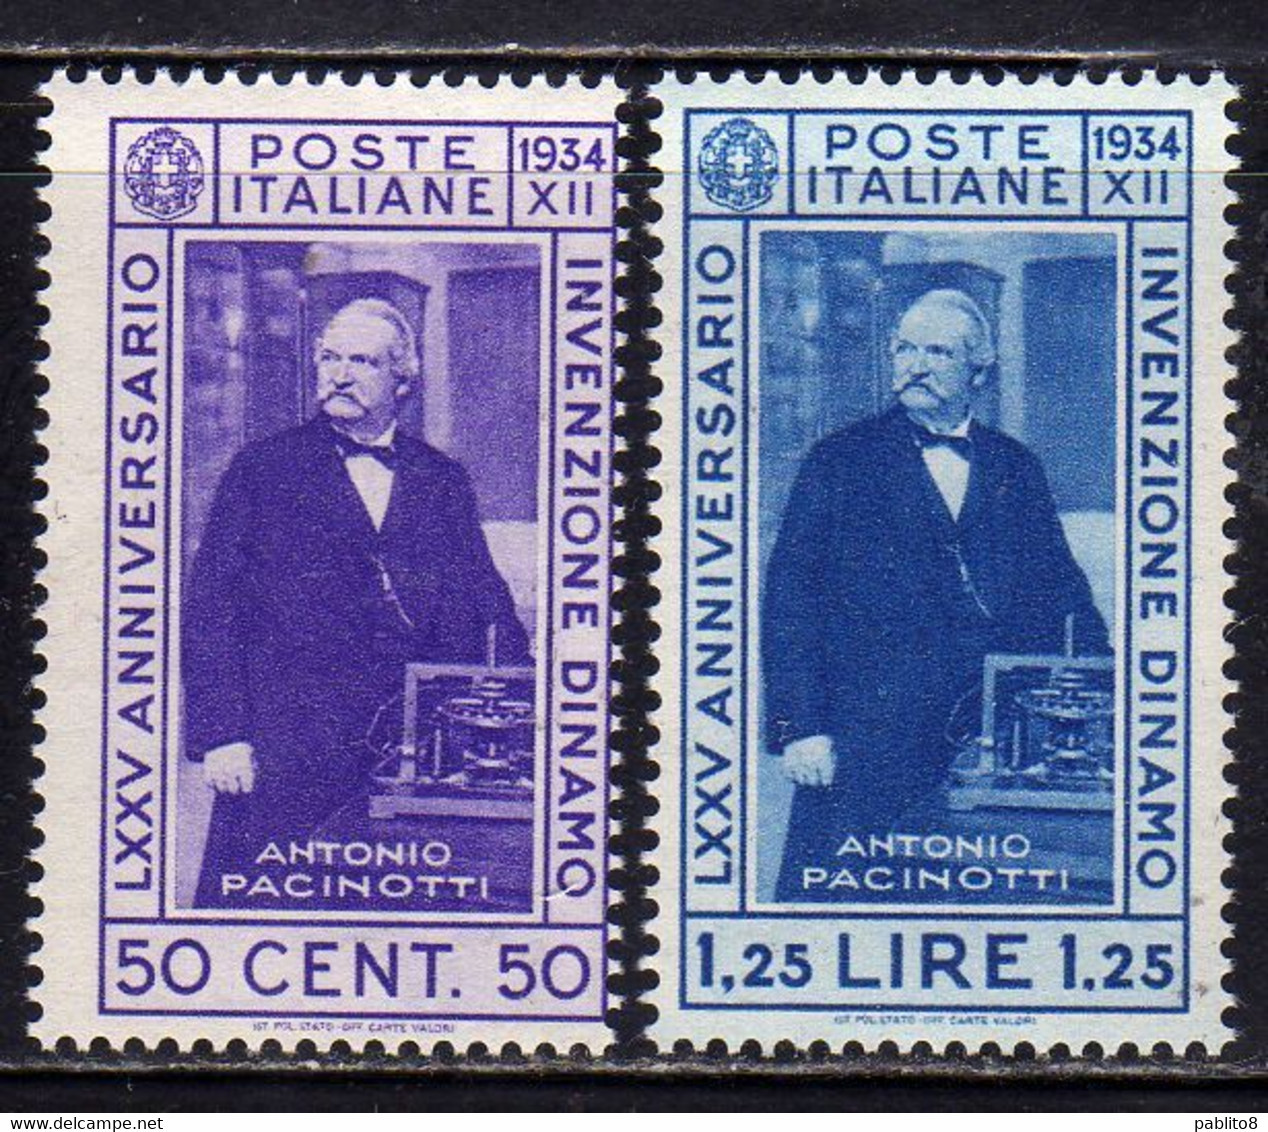 ITALIA REGNO ITALY KINGDOM 1934 INVENZIONE DELLA DINAMO PACINOTTI SERIE COMPLETA COMPLETE SET MNH - Mint/hinged